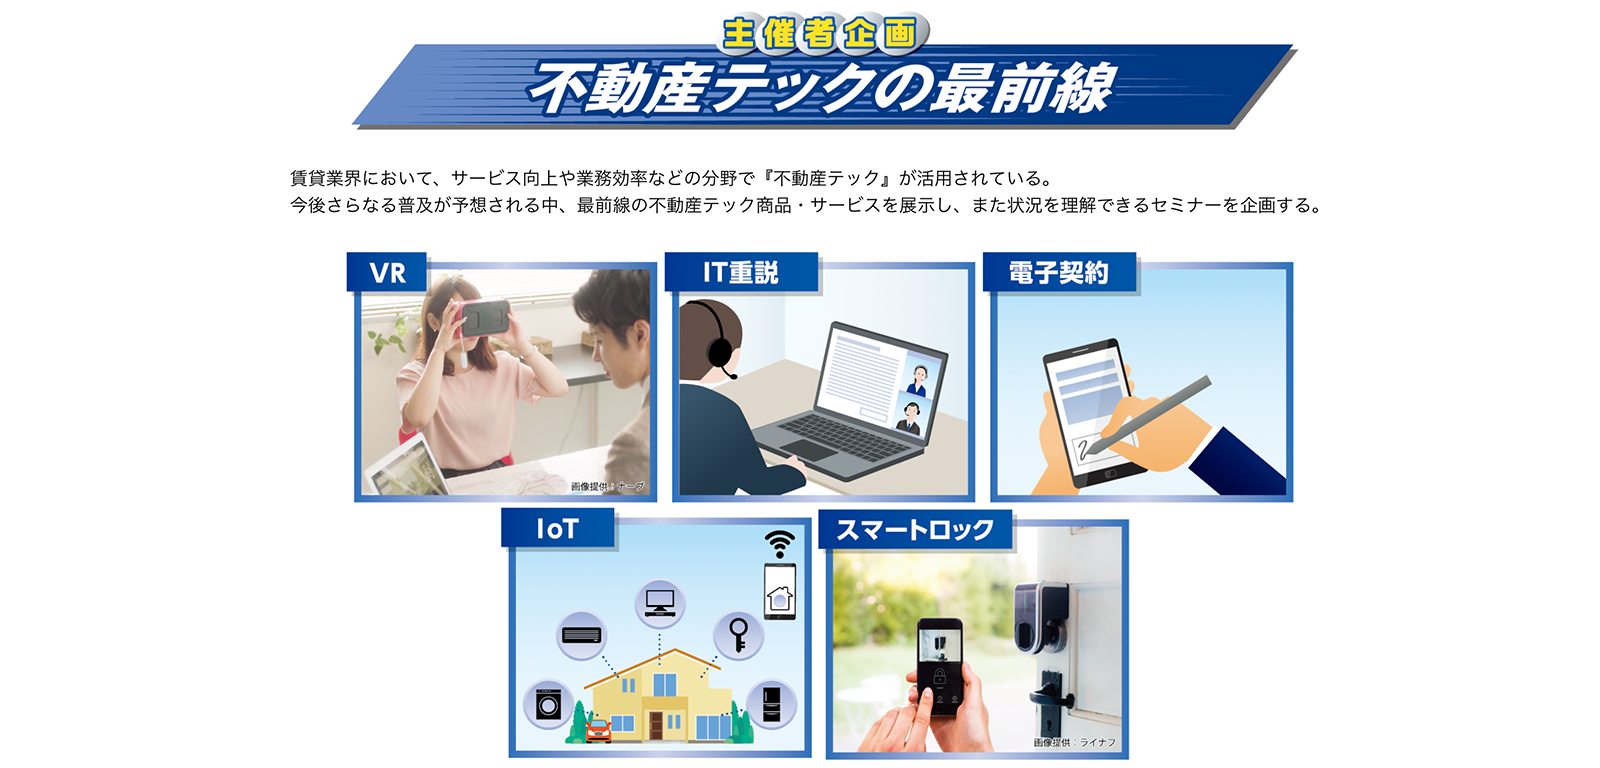 賃貸住宅フェア公式サイト https://fair2019.zenchin-fair.com/about/tokyo/ 2019年7月30日最終アクセス